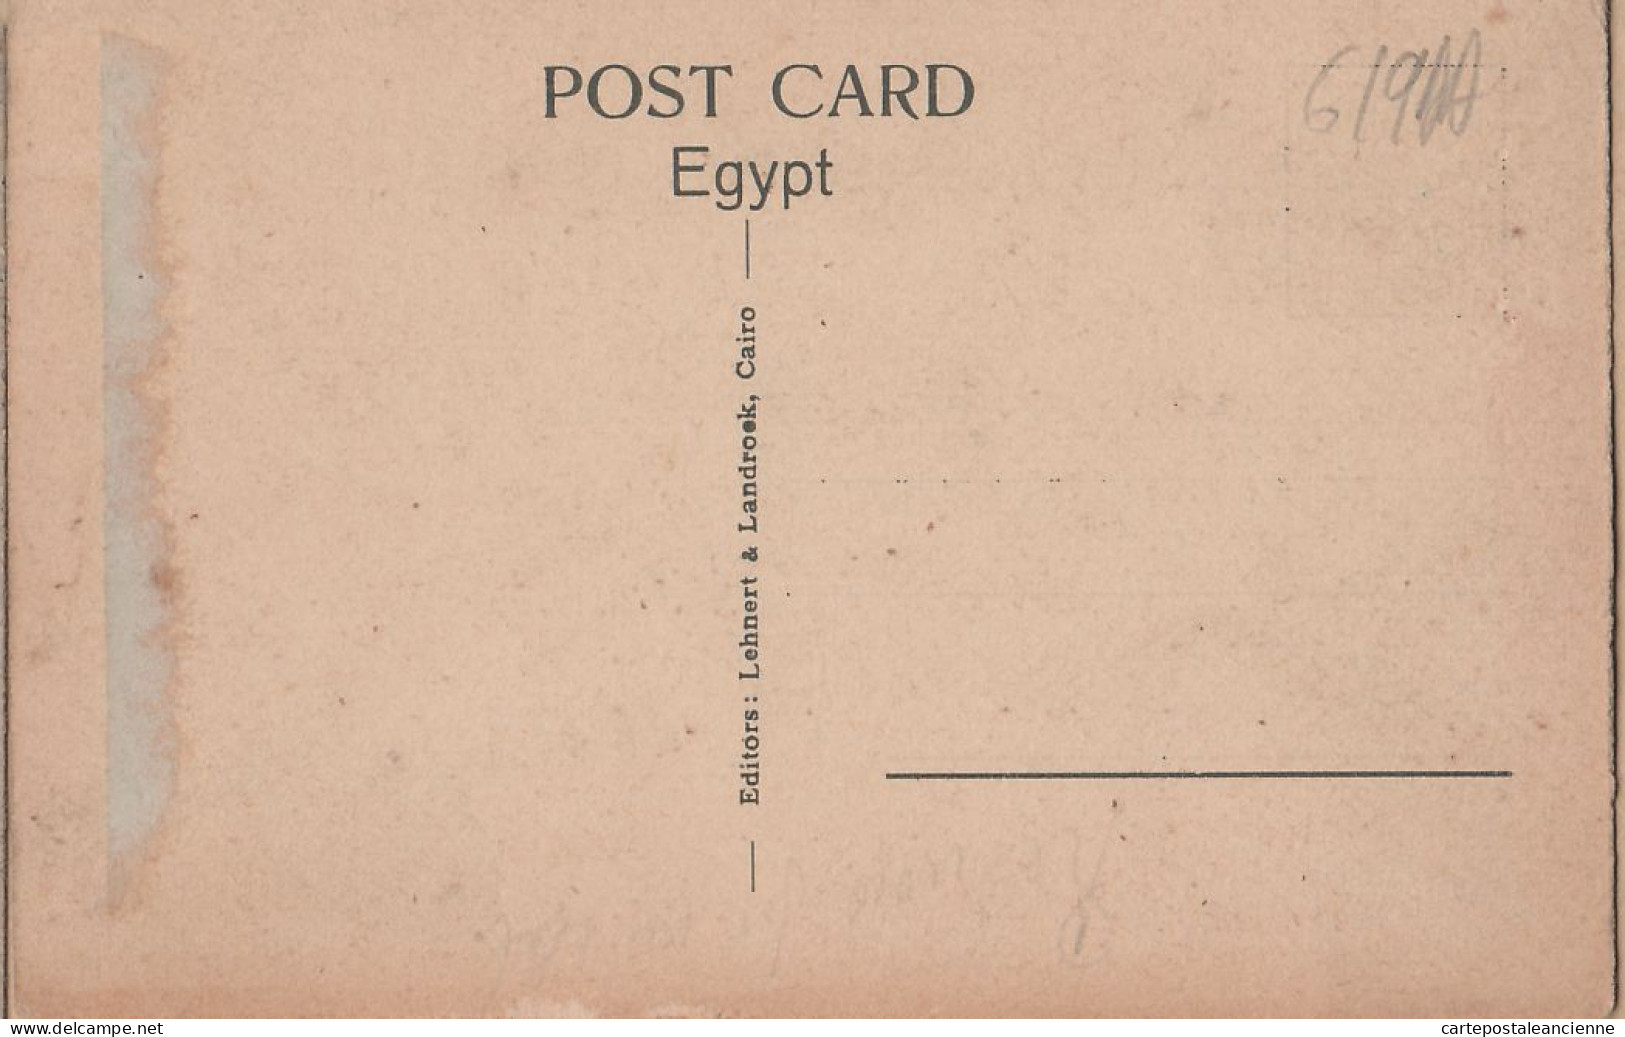 01833 / Egypt CAIRO In The Bazaars LE CAIRE Les Bazars 1920s - LEHNERT LANDROCK 1117 Egypte Agypten Egipto Egitto - Kairo